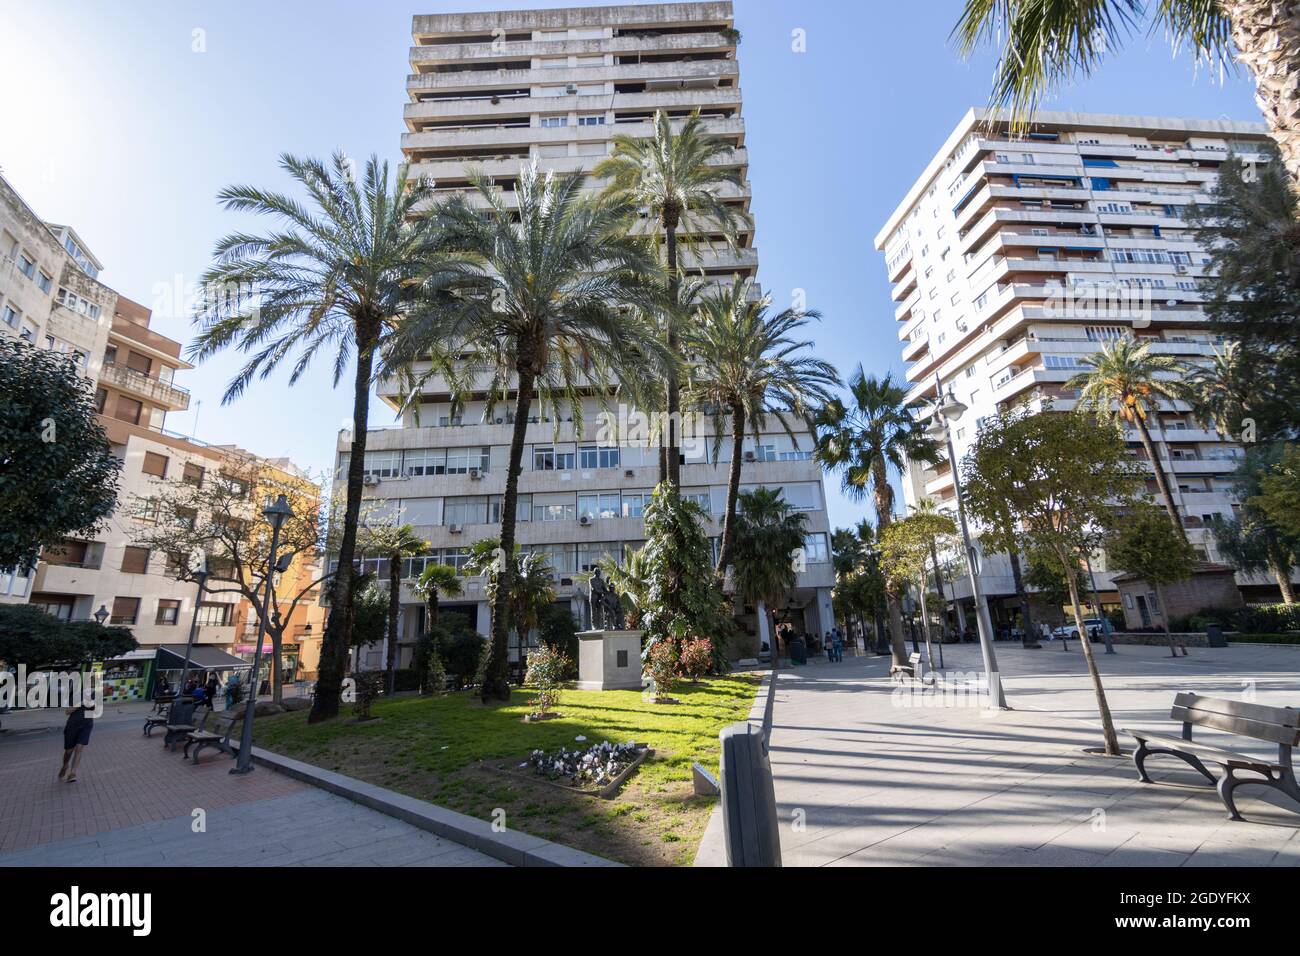 Huelva, Espagne; 03.16.2021: Avenida Gran via, au centre de la ville. Une température de 20 degrés Banque D'Images